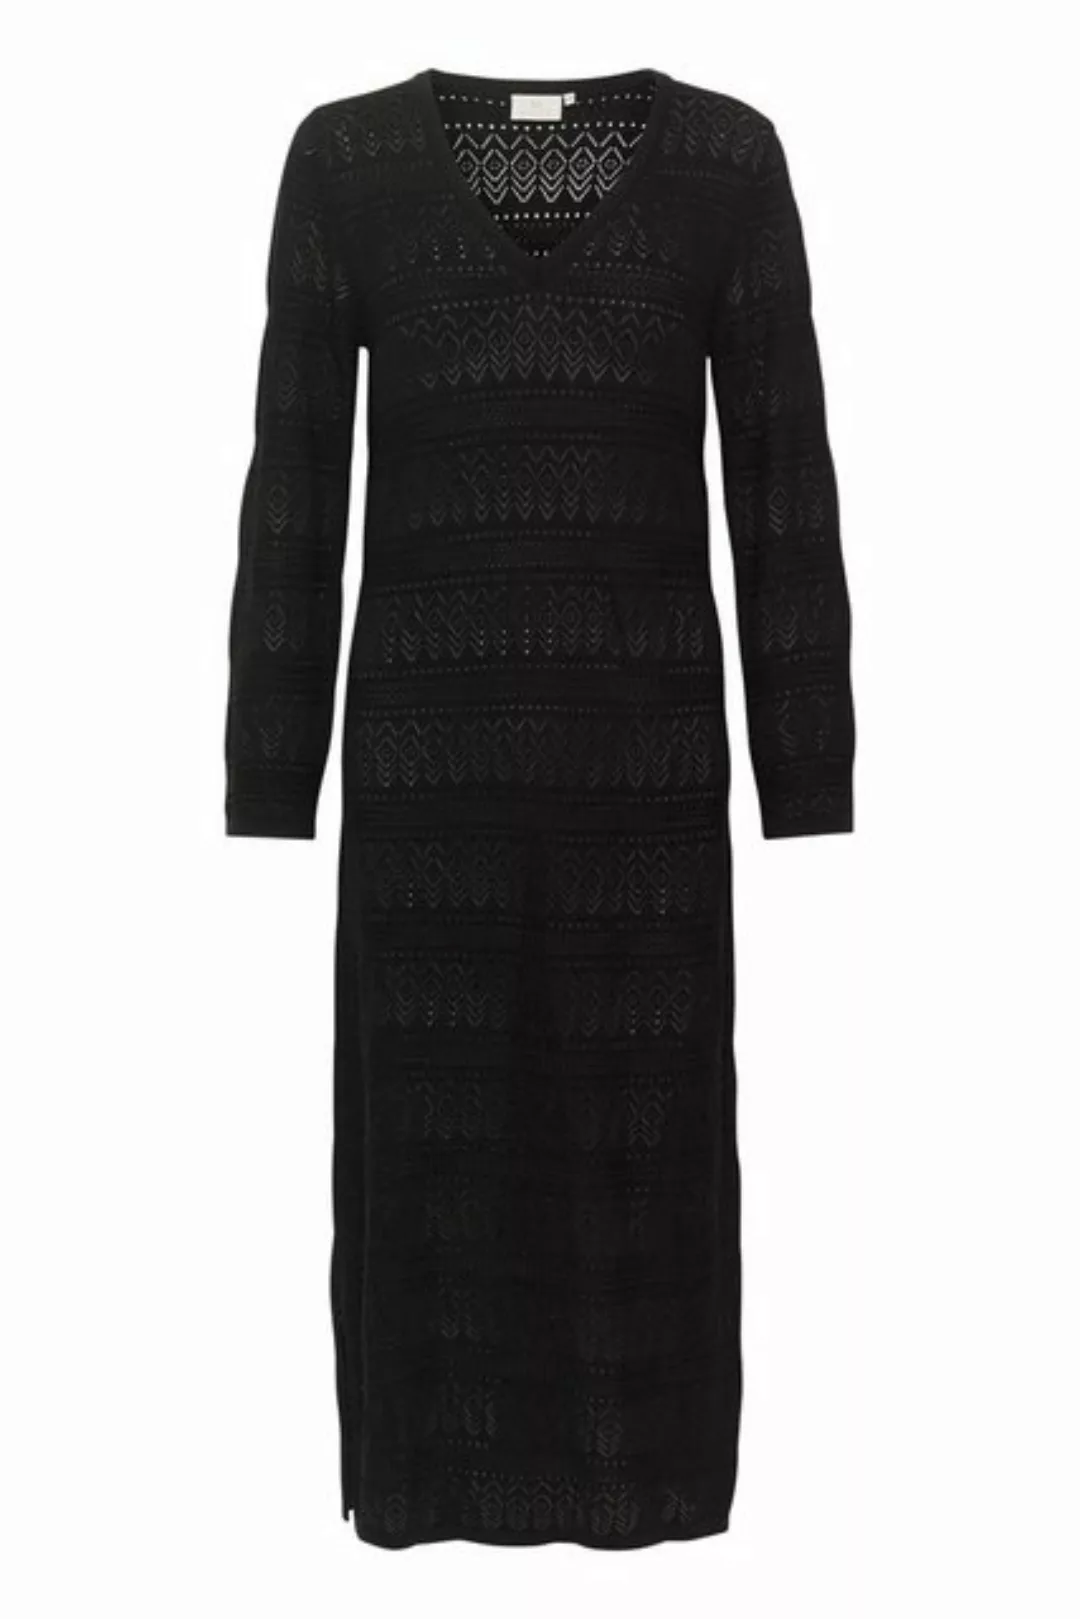 KAFFE Strickkleid Kleid KAnatalie günstig online kaufen